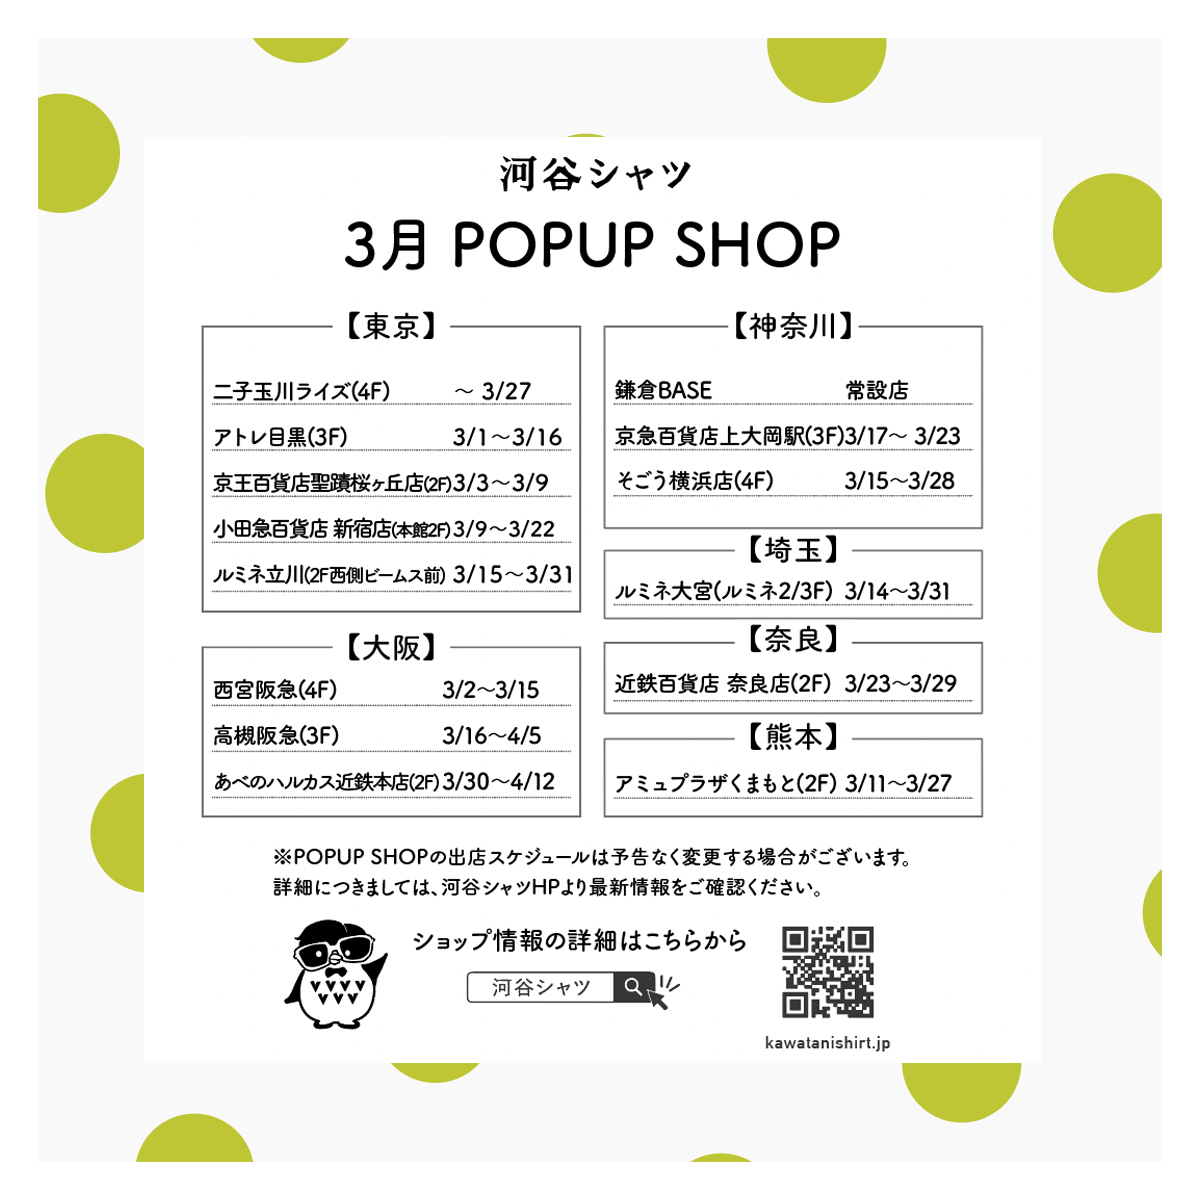 【New】3月のPOPUP SHOP情報